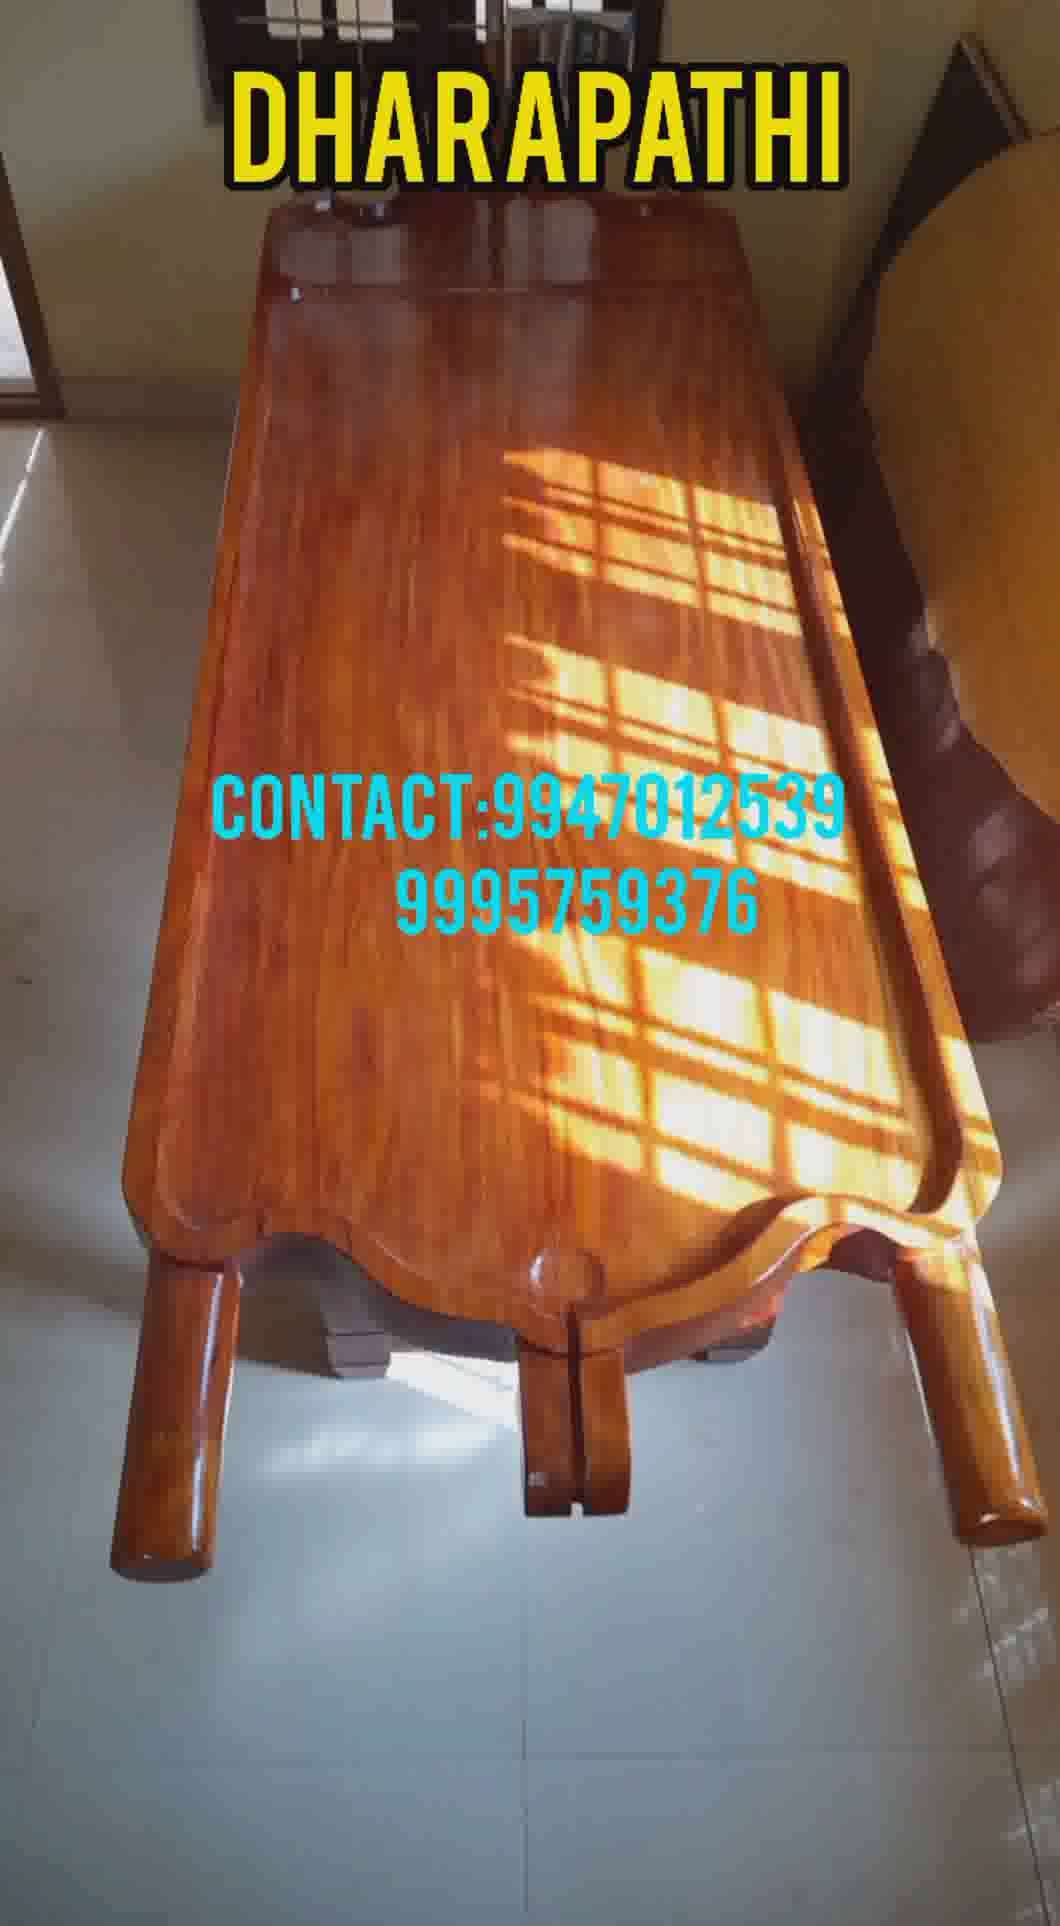 Dharapathi/Ayurvedic massage table #furniture   #furniturework   #tables  #Palakkadcarpenter  #palakkadu  #godsowncountry  #Carpenter  #carving  #carpentry